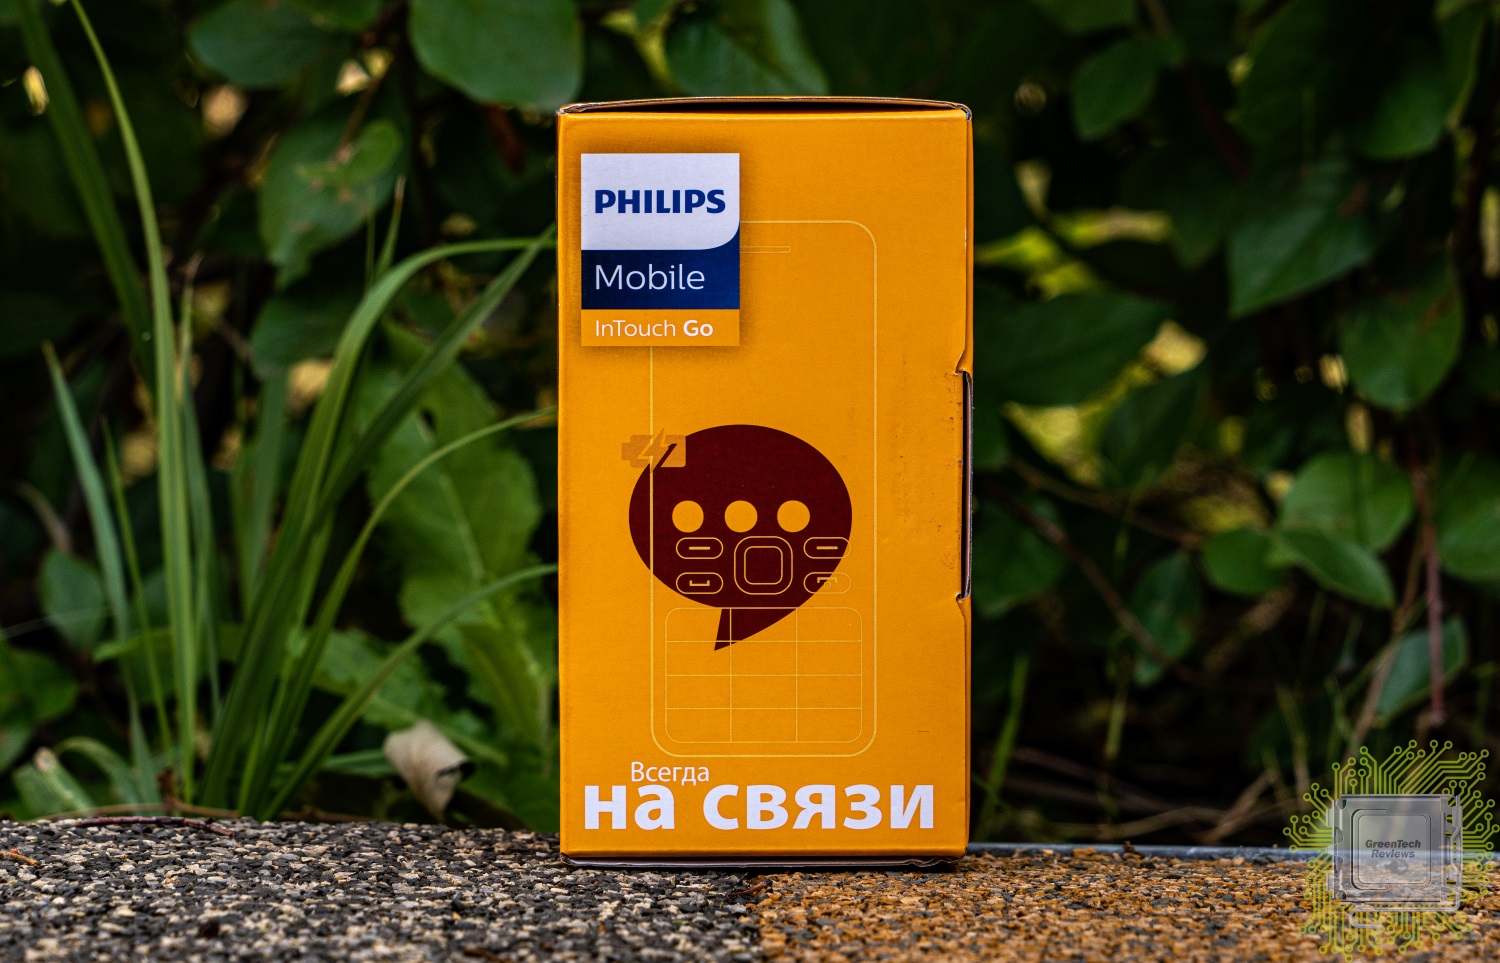 Philips Xenium e185 коробка. Xenium e185. Чехол для Philips Xenium e185. Заставка с рекламы Philips Xenium e185. Филипс 185 телефон